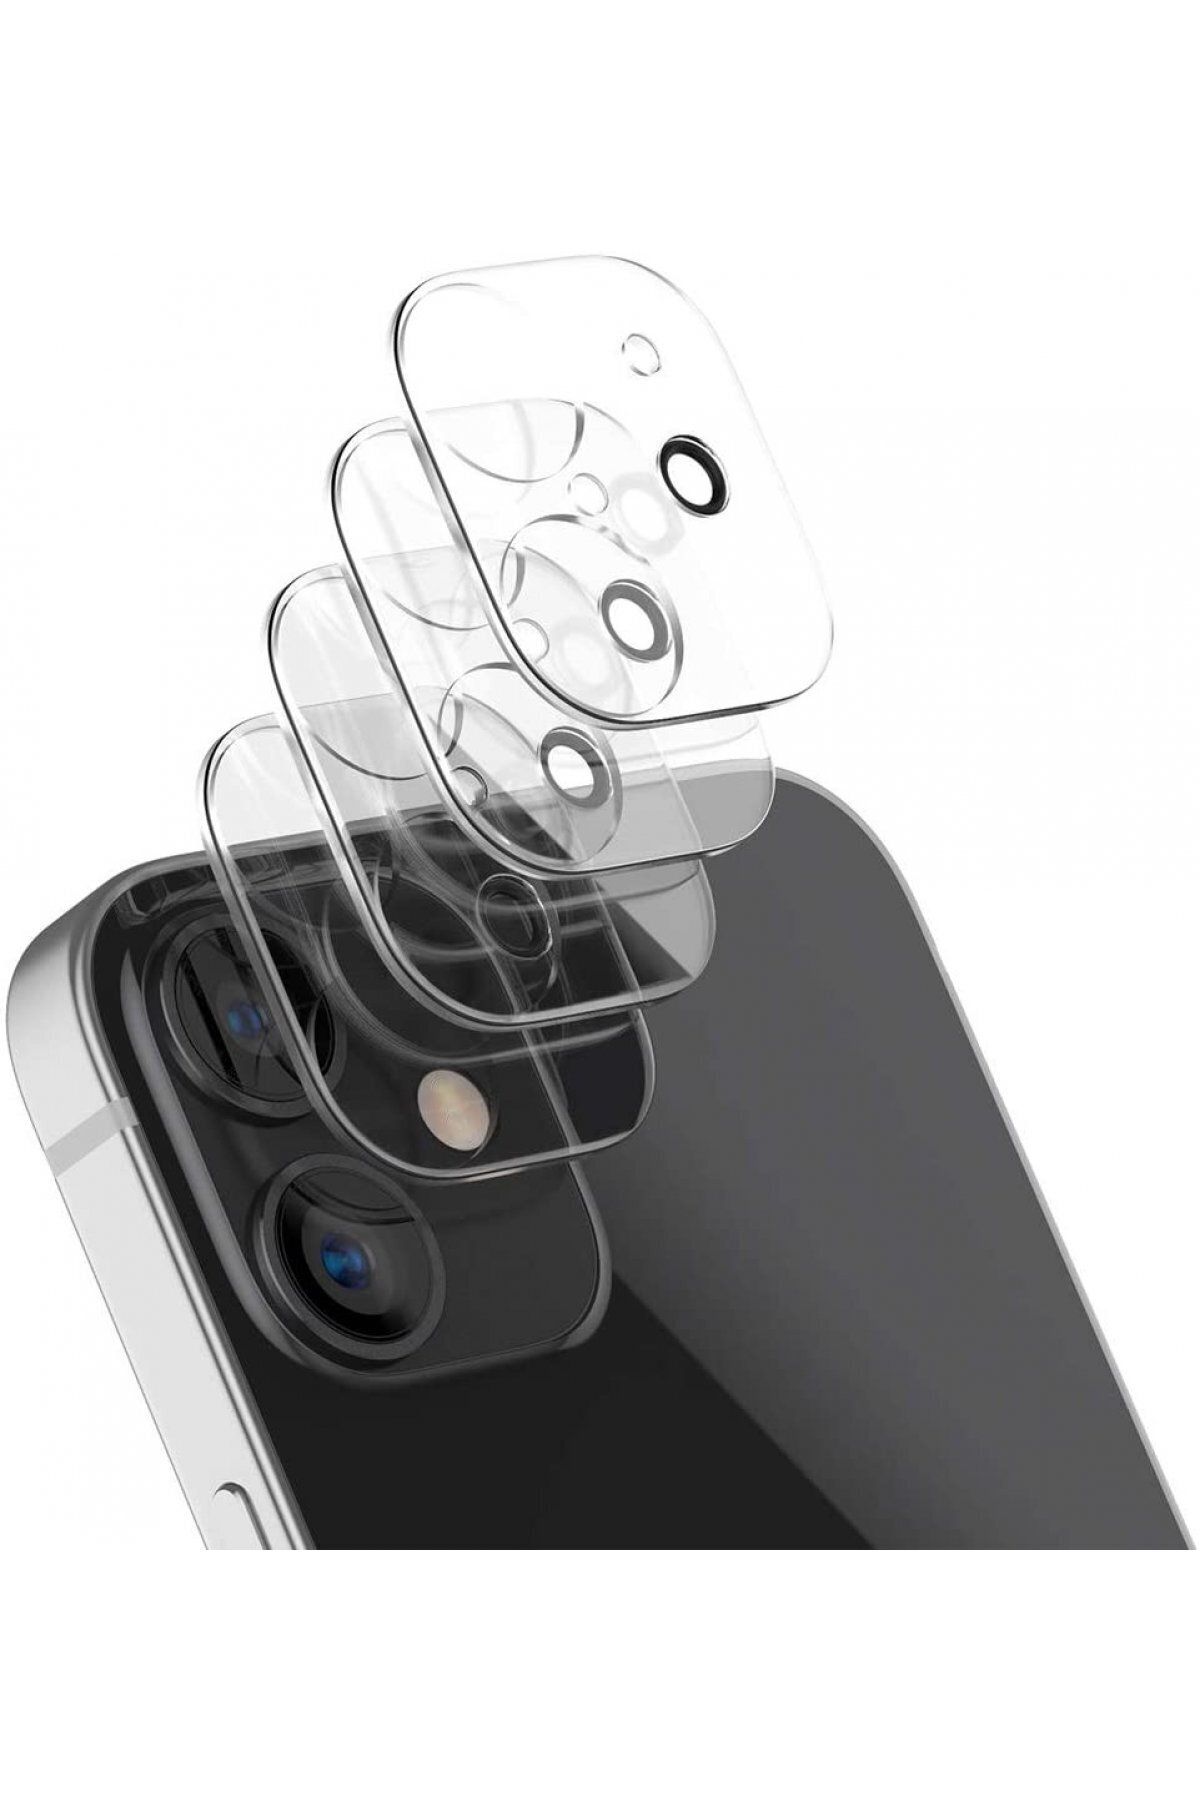 cepmoda iPhone 12 Pro Max Uyumlu Kamera Lens Koruyucu 9H Cam - Şeffaf AntiŞok Kamera Bölümü Koruyucu